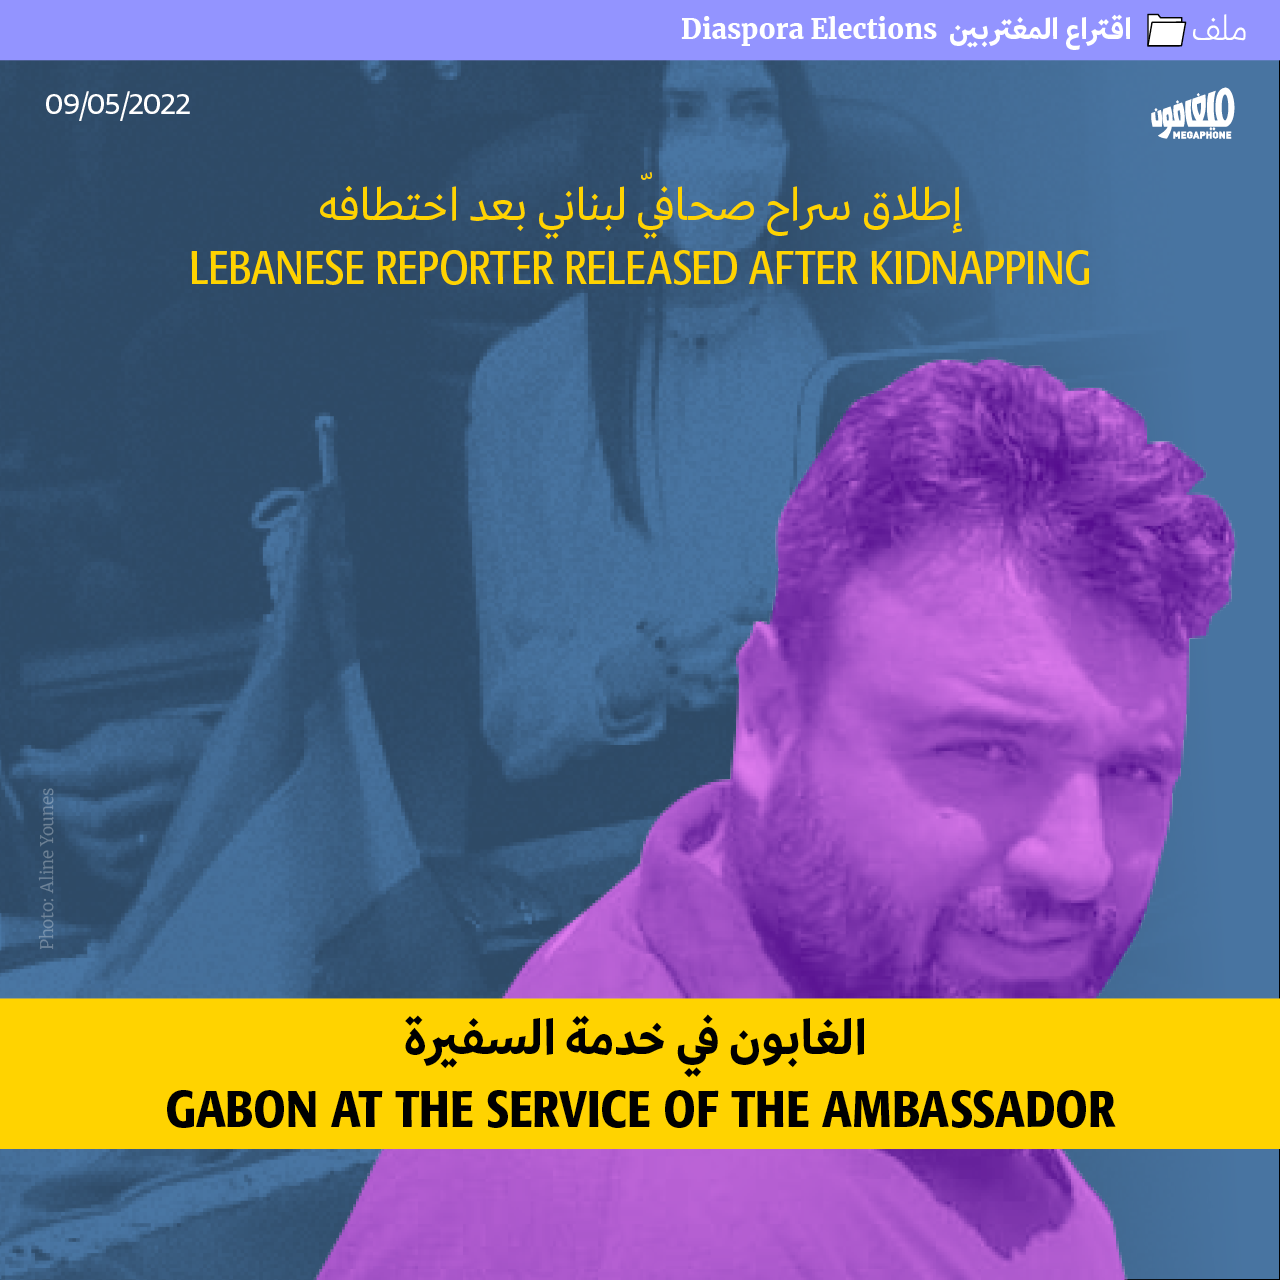 إطلاق سراح صحافيّ لبناني بعد اختطافه: الغابون في خدمة السفيرة